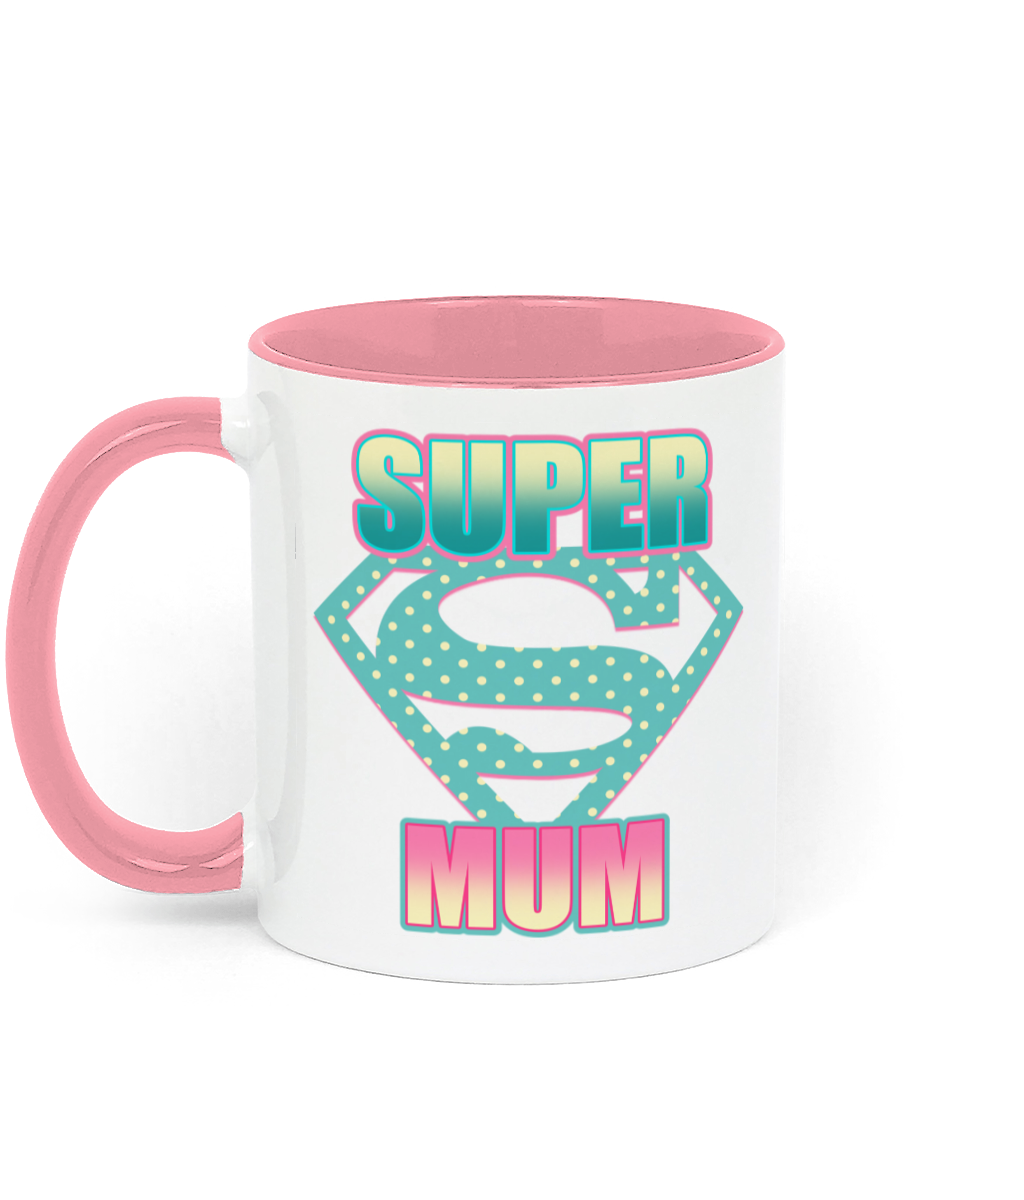  mum mug